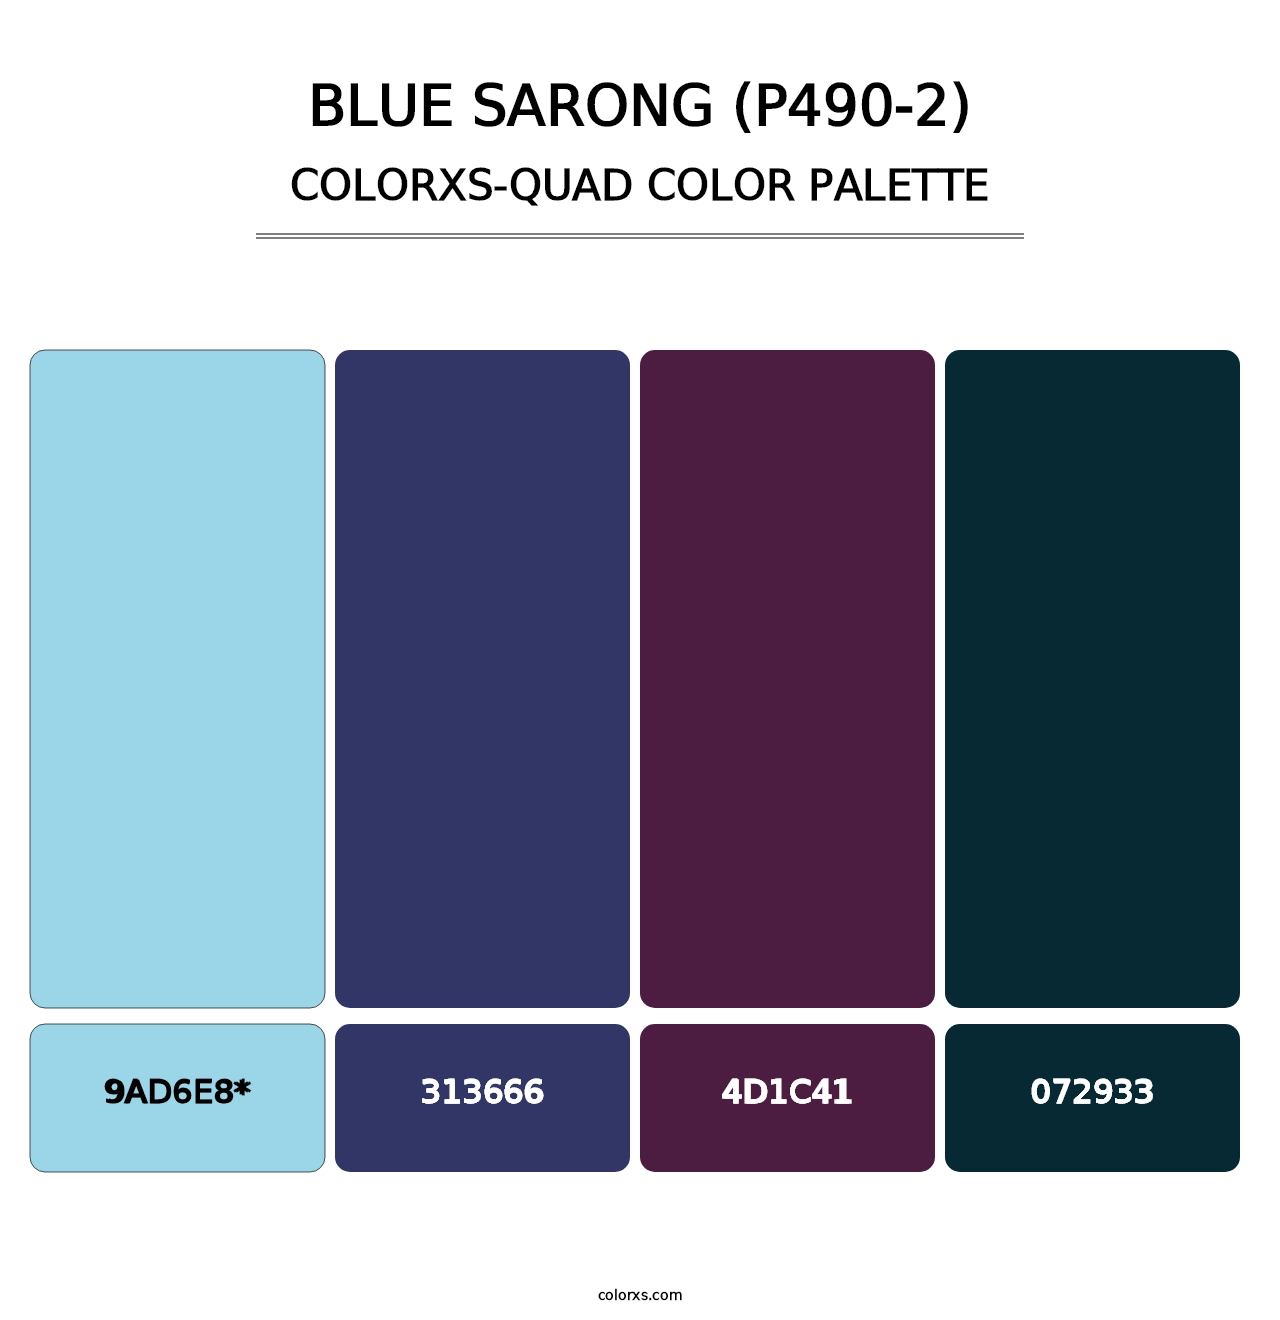 Blue Sarong (P490-2) - Colorxs Quad Palette